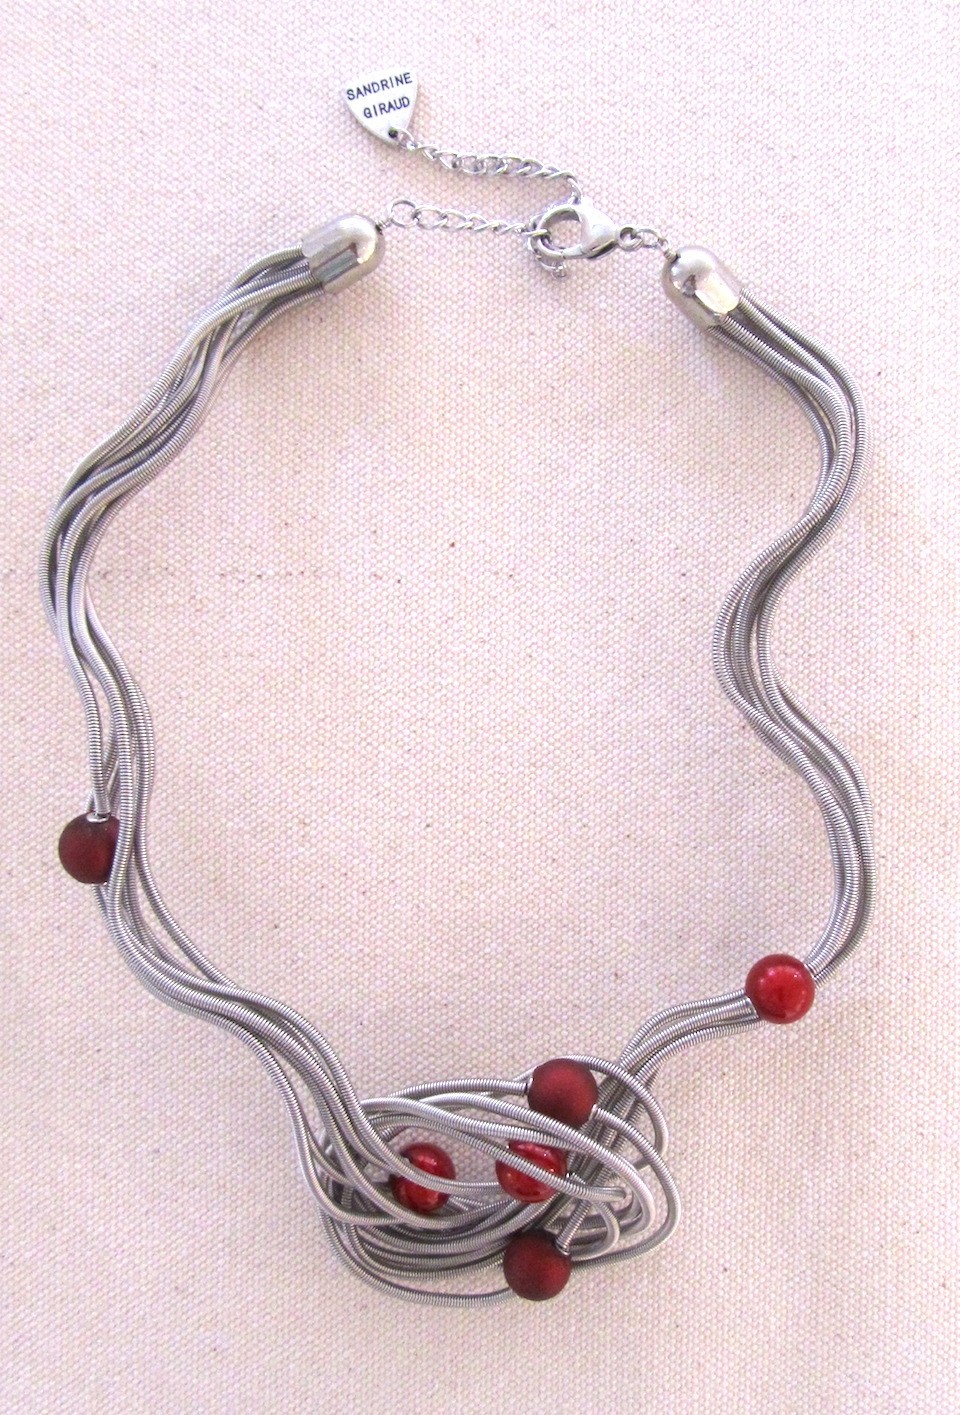 Collier LIANE PERLÉE argent-rouge, no 107, de l'artiste Sandrine Giraud, Ce bijou modulable, toujours original, marie avec élégance la grâce des perles avec l’originalité des lignes résolument contemporaines.